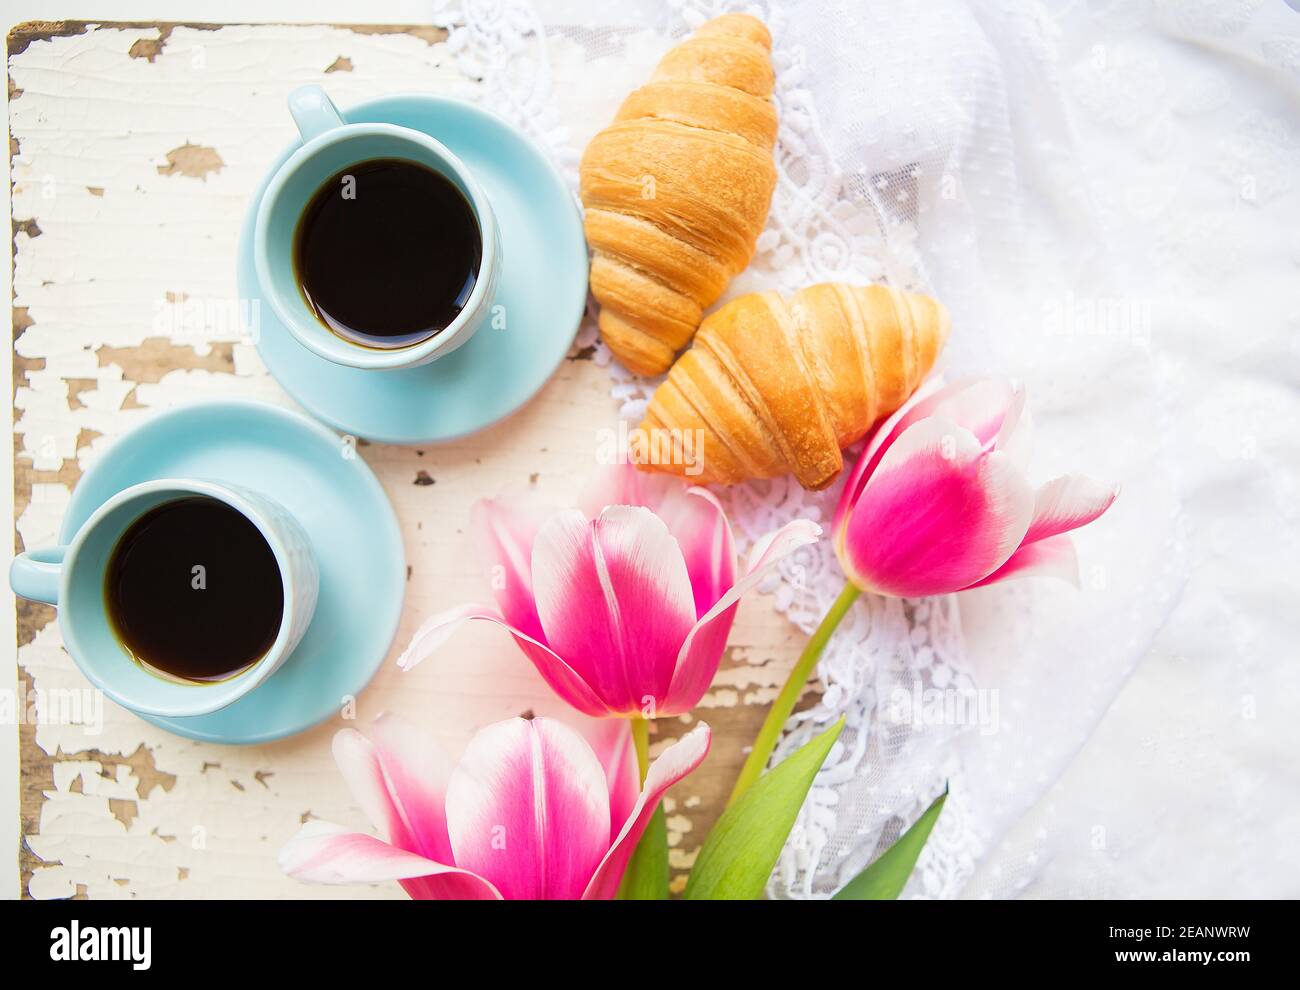 Bonne tasse de café, des croissants et des tulipes roses sur le vieux tableau blanc Banque D'Images